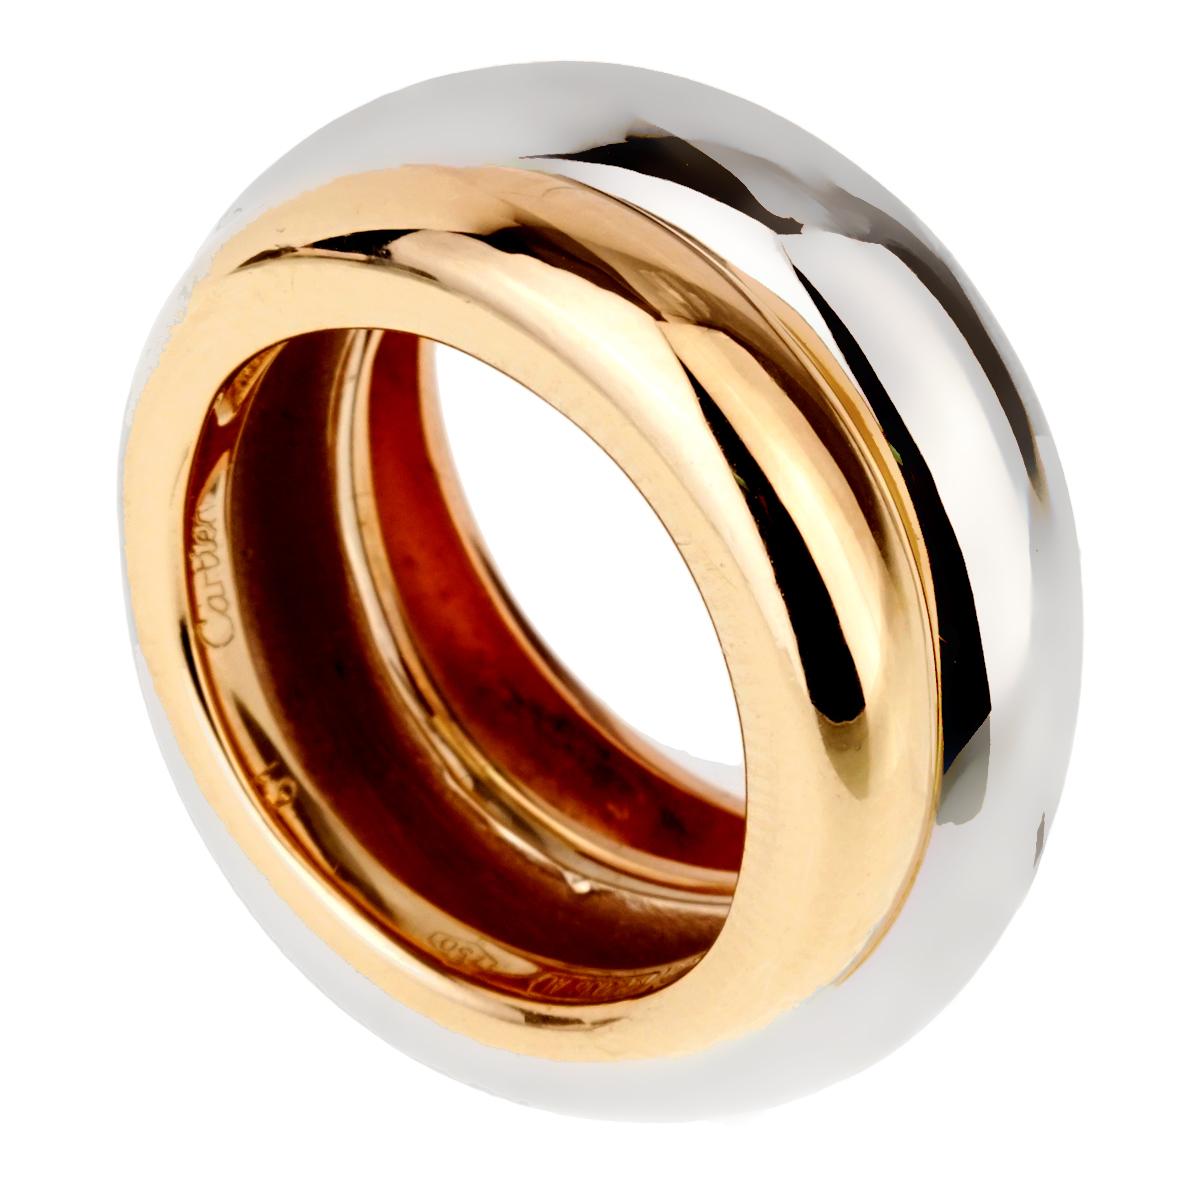 Ein atemberaubender Cartier Trinity Ring mit dreifarbigem 18 Karat gelbem Rosé- und Weißgold:: die nahtlos miteinander kombiniert werden. Größe 5 1/2

Artikelnummer: 1059